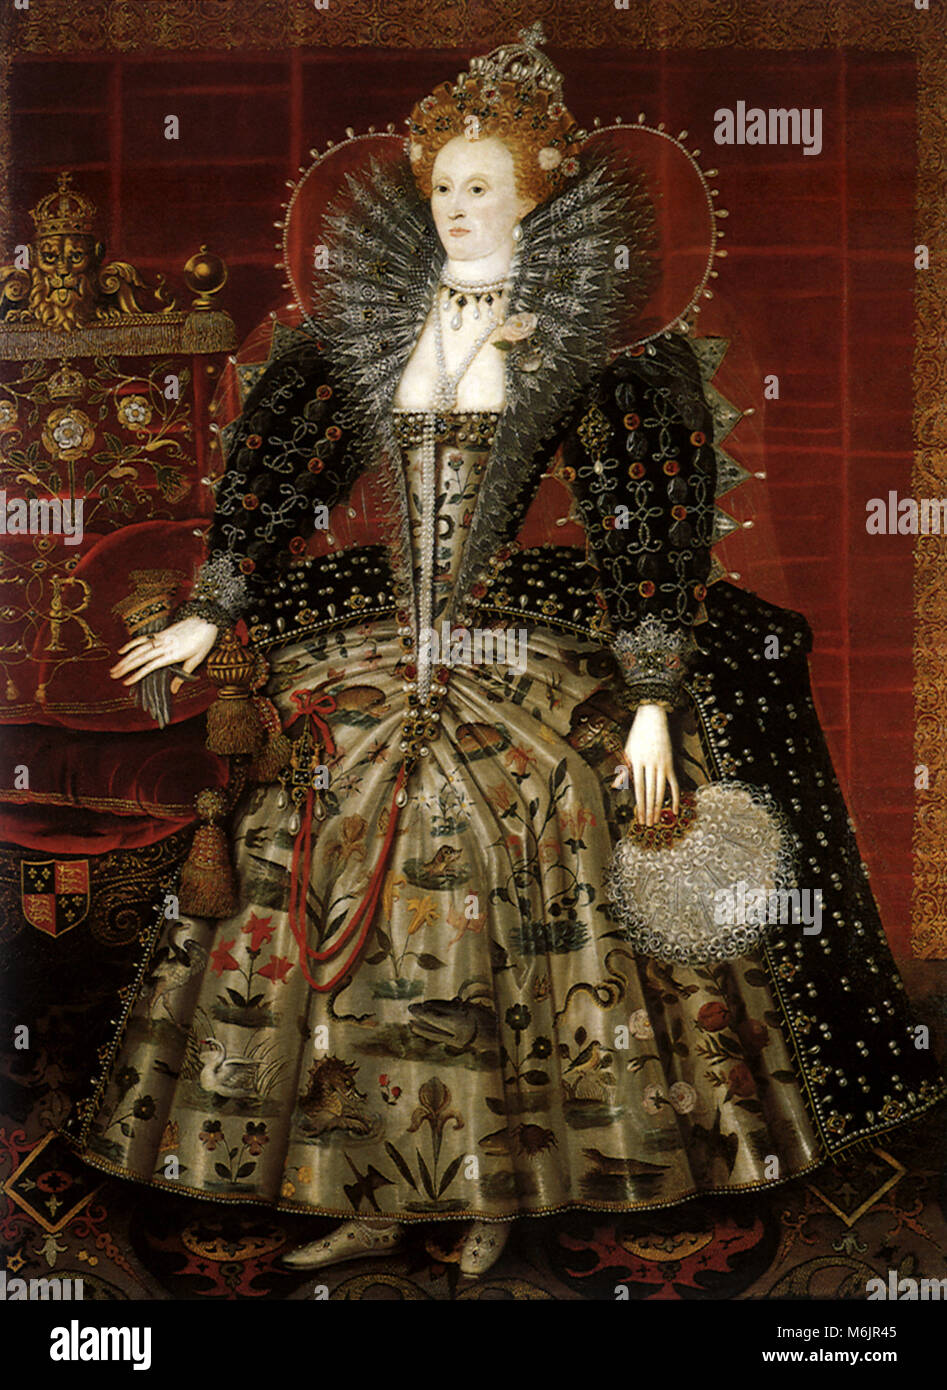 Queen Elizabeth I, die hardwick Portrait 1599, Workshop von Nicholas Hilliard, 1599. Stockfoto